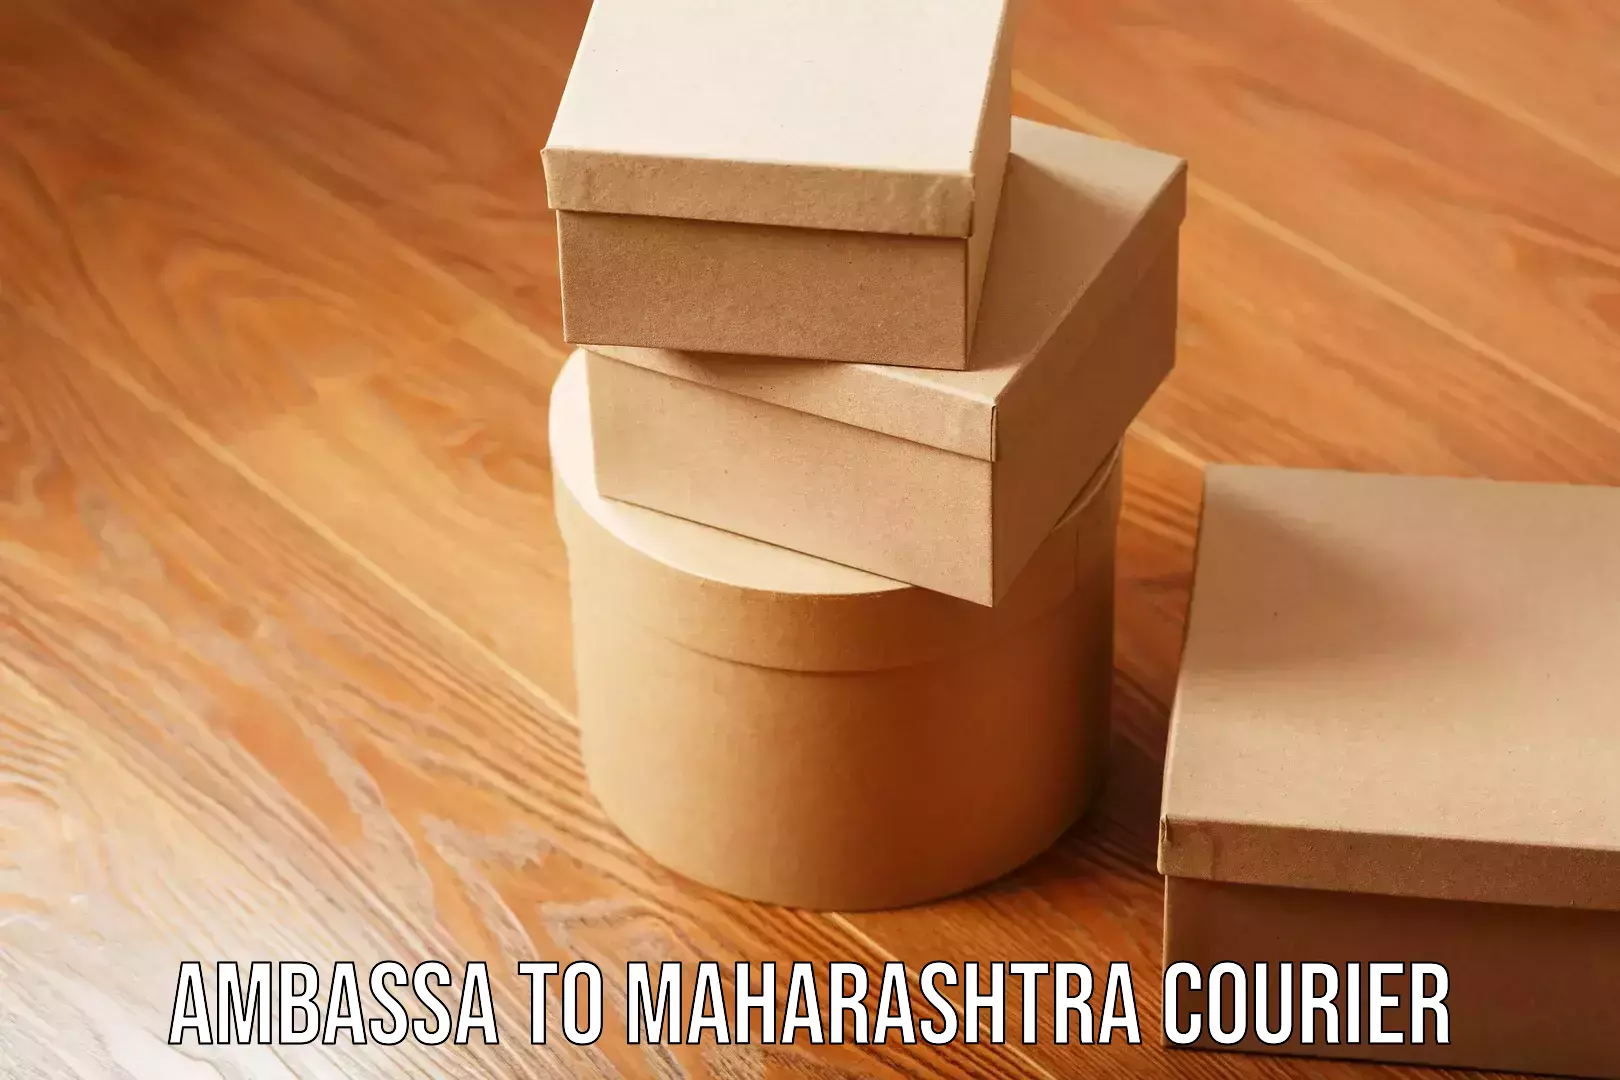 Large package courier Ambassa to Maharashtra